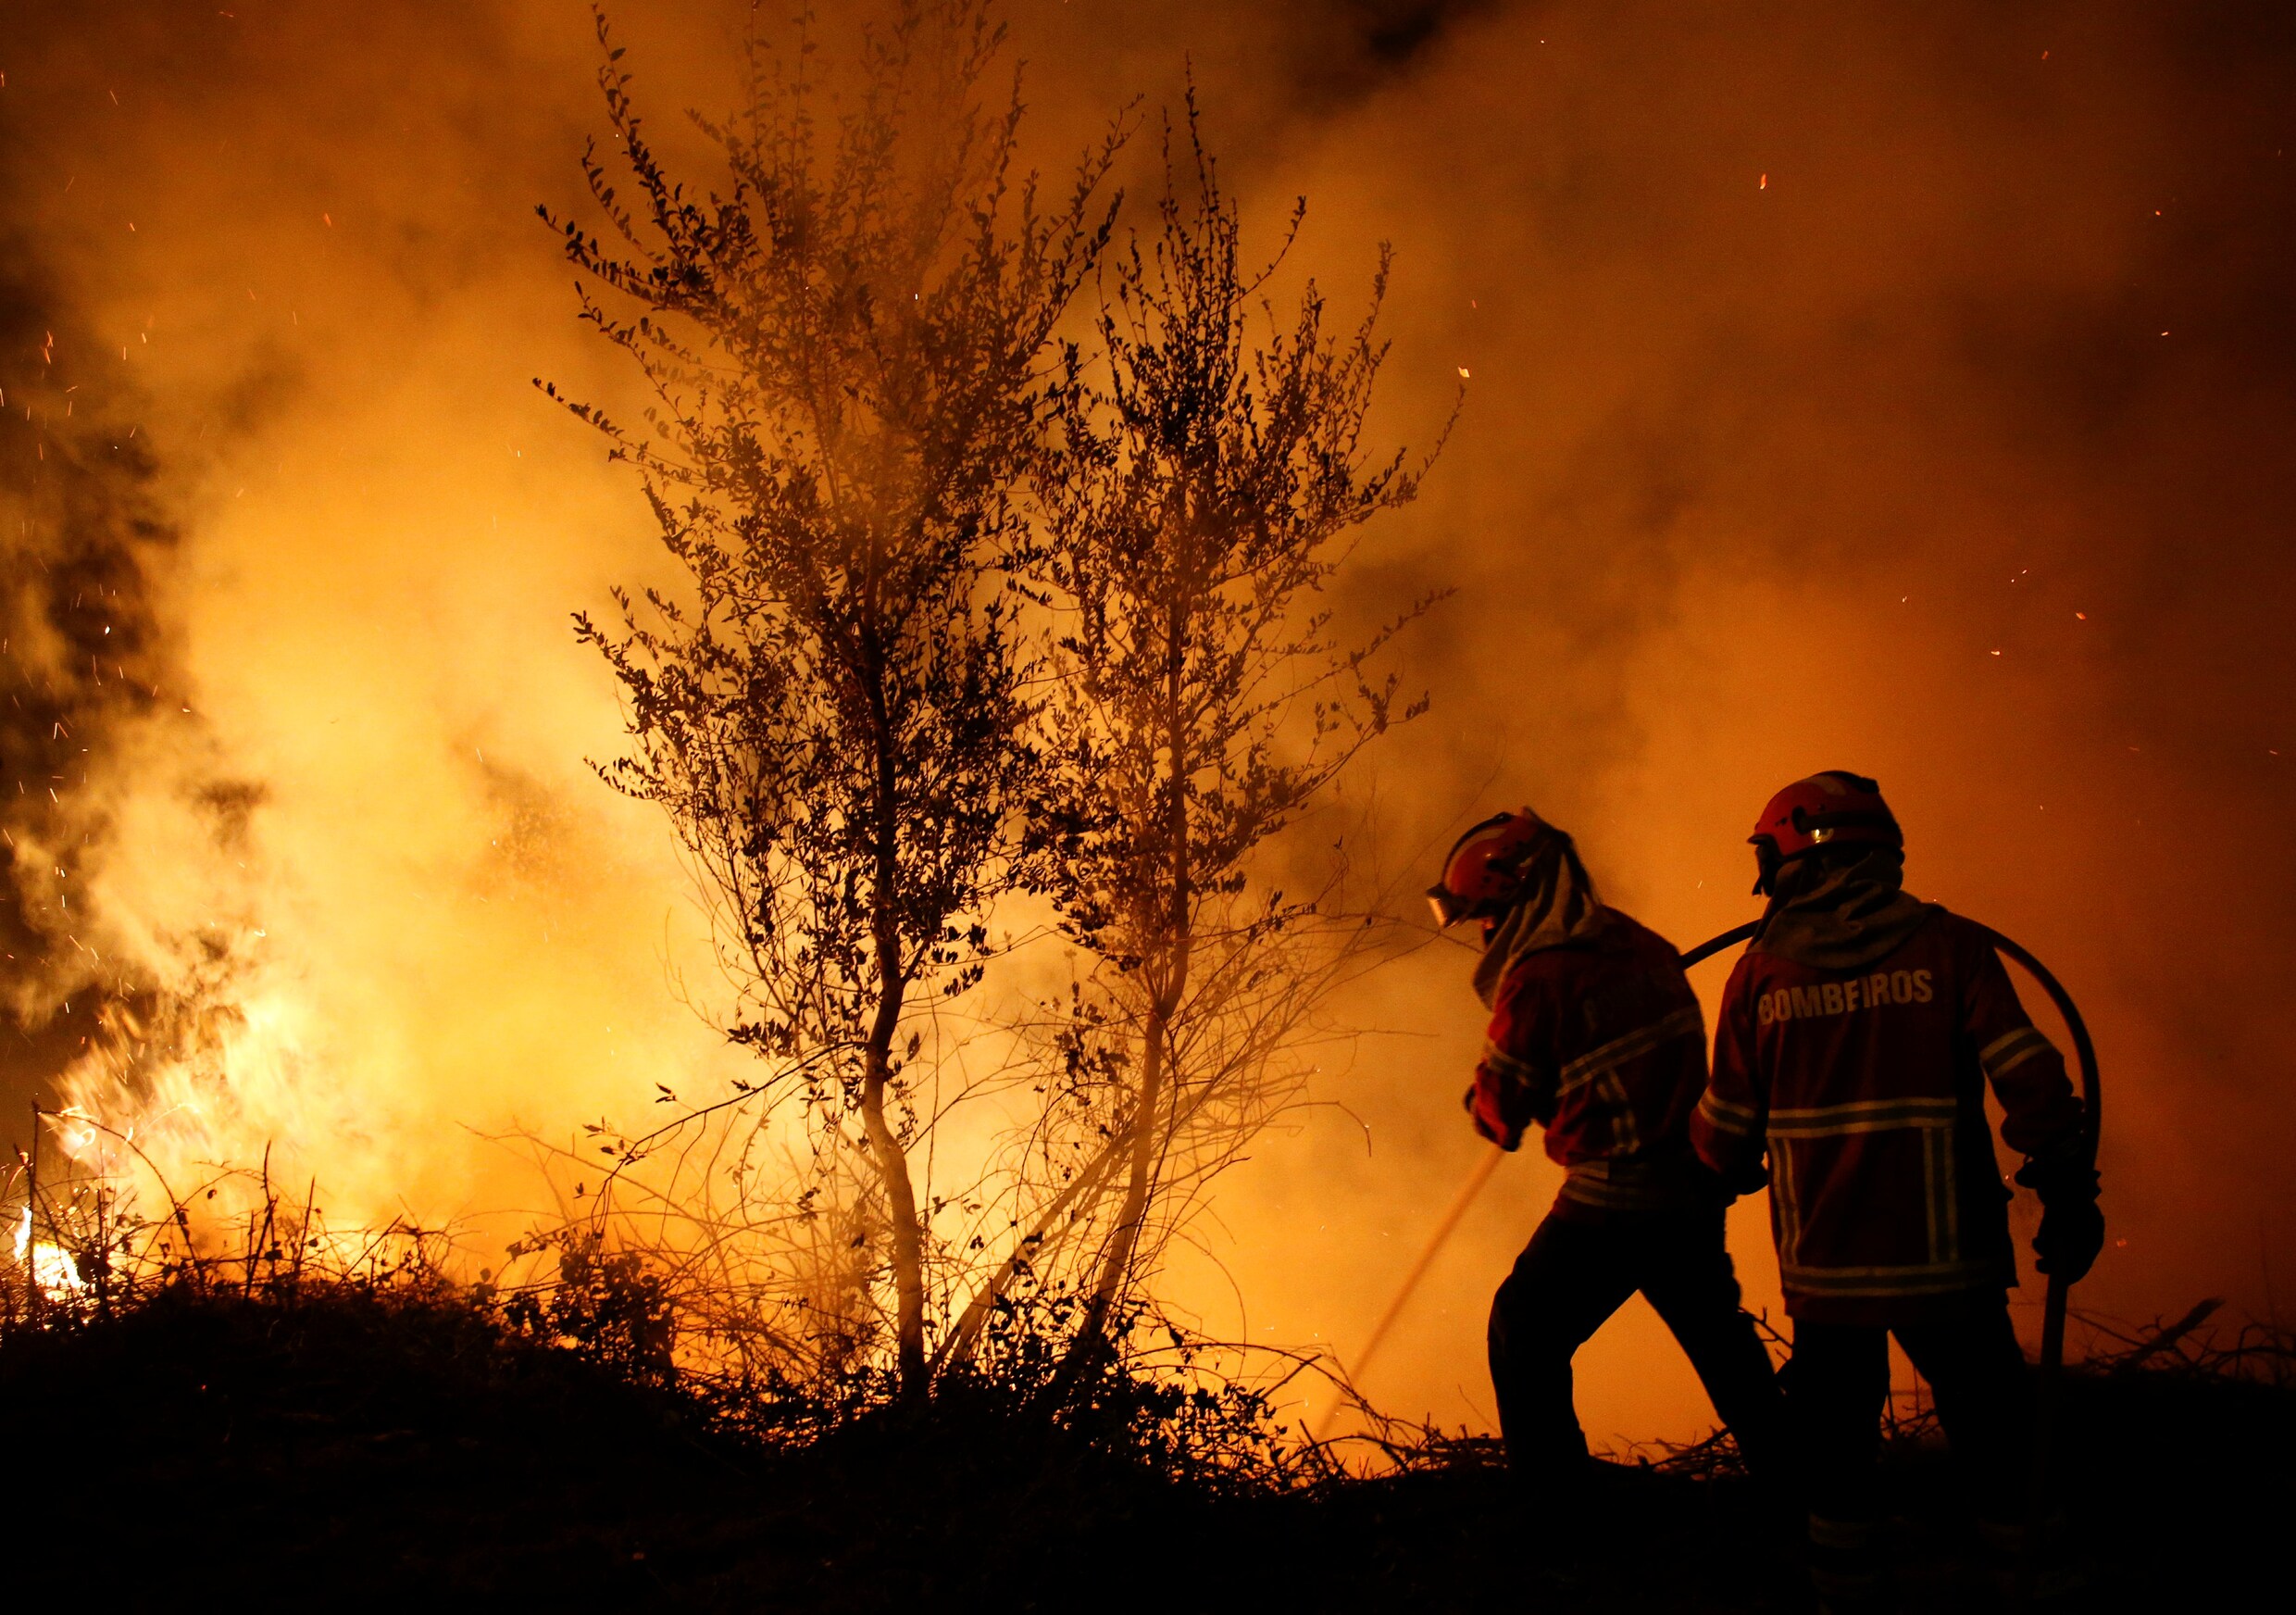 Drie dagen van nationale rouw in Portugal begonnen, belangrijkste branden onder controle